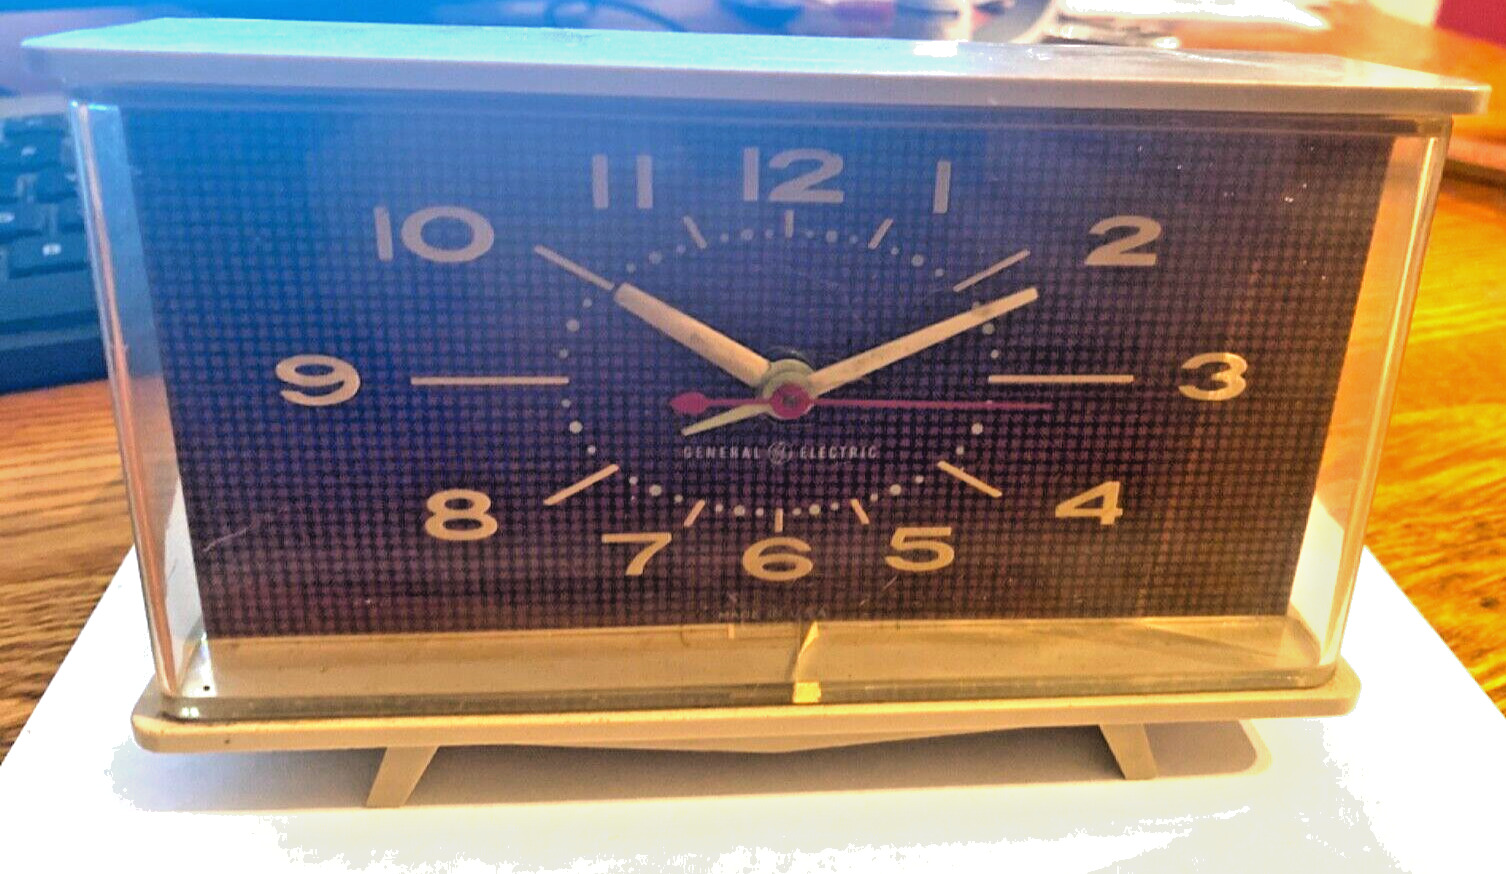 Vintage General Electric Alarm Clock 1970s, nice looking.